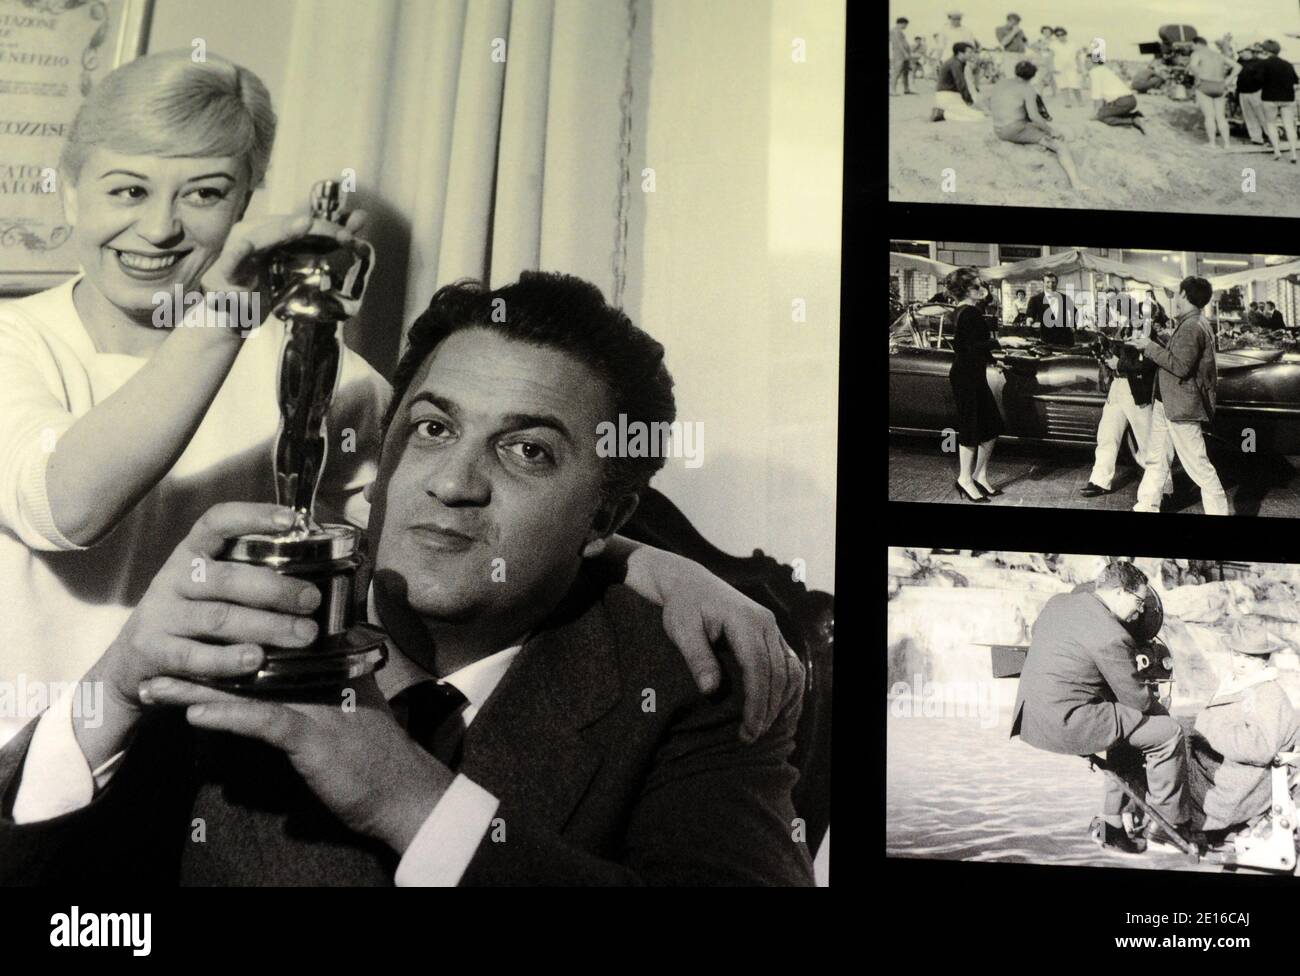 Las fotos que muestran al cineasta italiano Frederico Fellini se exhiben durante la exposición "Cinecitta Shows off" en los estudios de Cinecitta de Roma el 2 de mayo de 2011. El famoso complejo de salas de cine de Roma Cinecitta abre sus puertas a una nueva exposición. 'Cinecitta si mostra' (Cinecitta' shows off) se extenderá hasta noviembre de 30.los visitantes podrán caminar sobre los escenarios de cine, incluyendo las réplicas de un tramo de Broadway del siglo XIX utilizado en las pandillas de Nueva York, Y el extenso Foro Romano construido para la serie de televisión de la BBC 'Roma'. Cinecitta' fue construido en 1937 bajo el dictador Benito Mussolini quien valoró el cine-ma Foto de stock